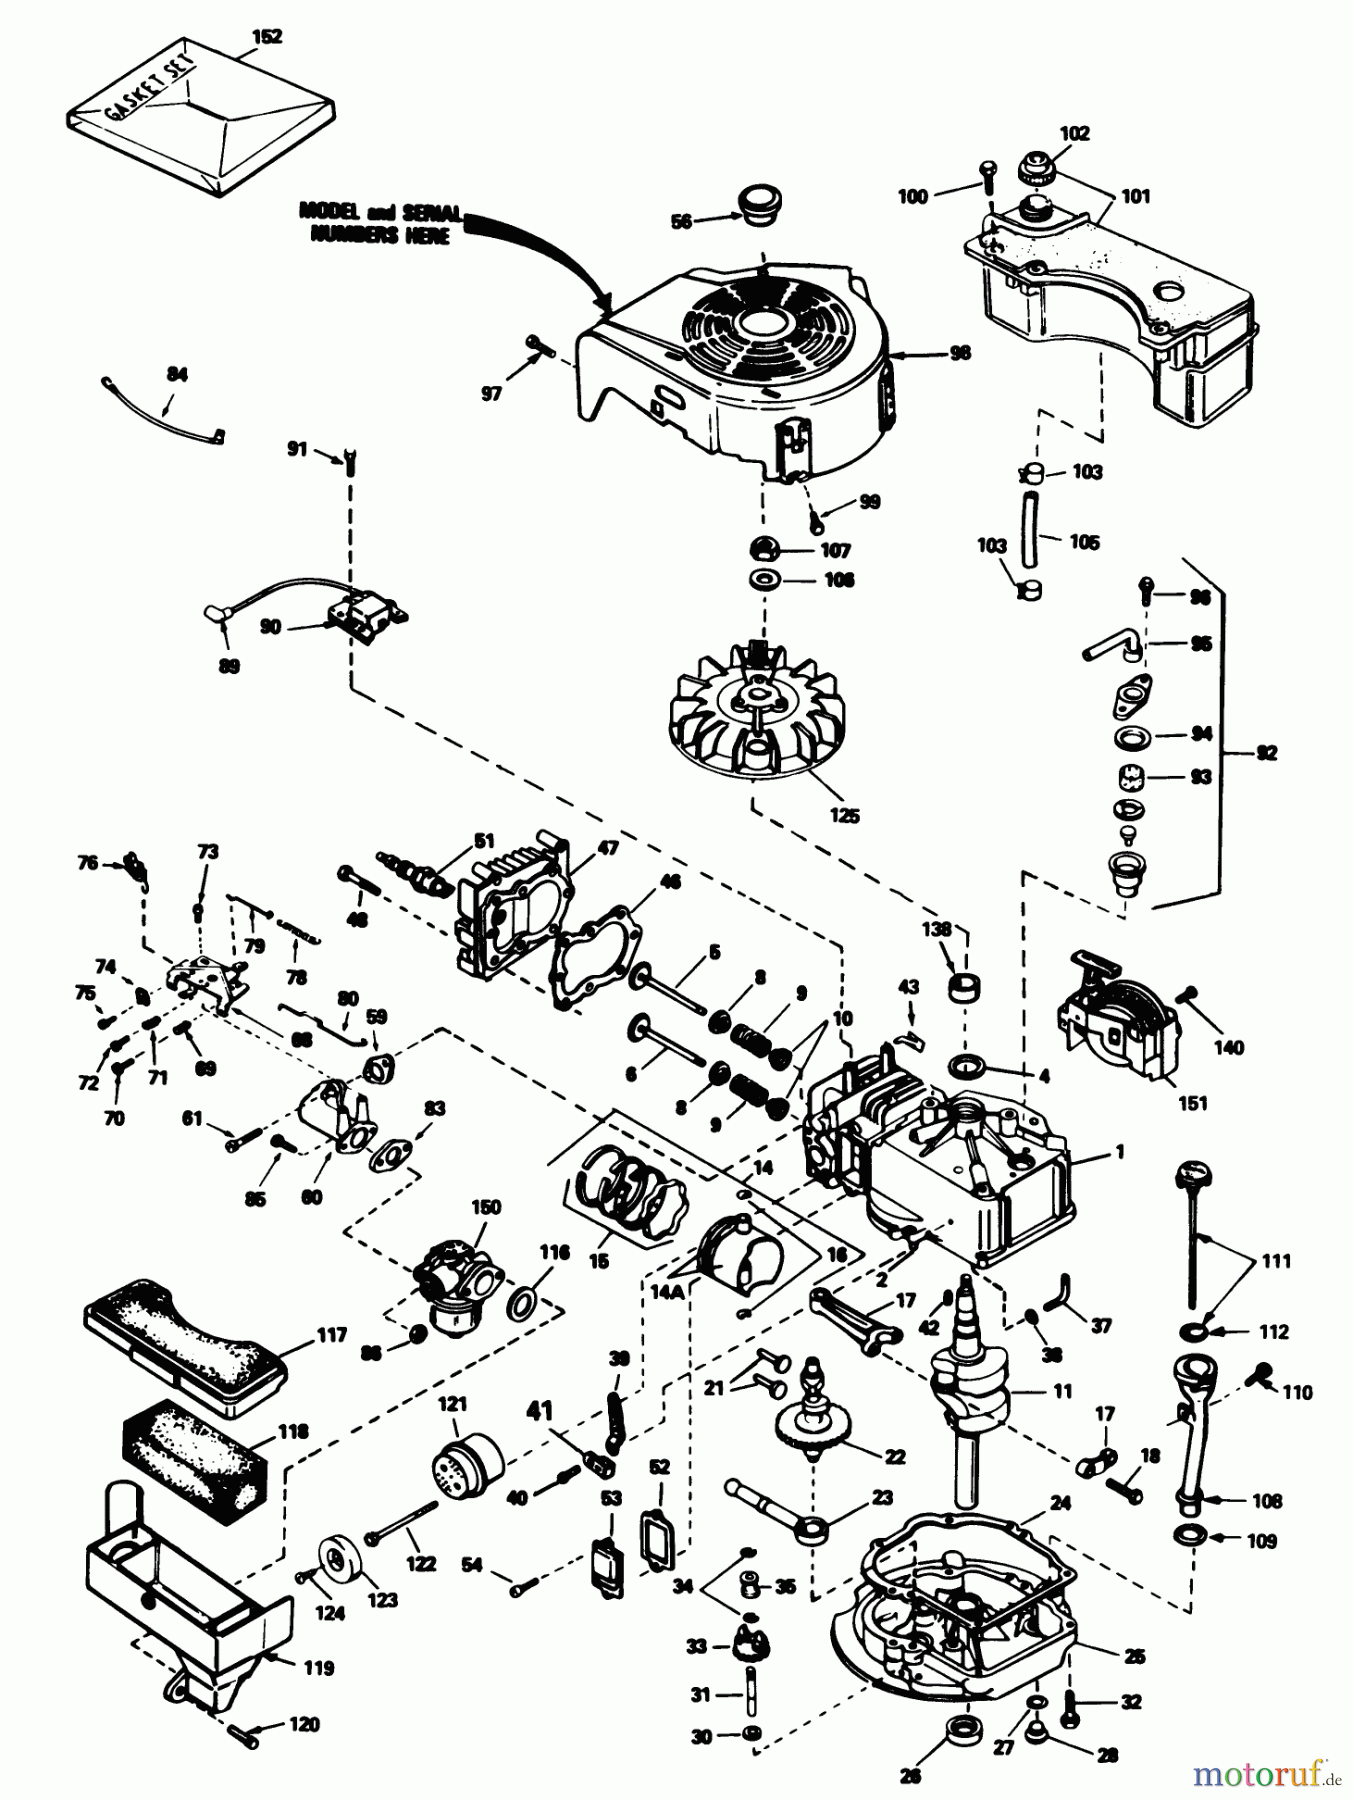  Toro Neu Mowers, Walk-Behind Seite 1 20780C - Toro Lawnmower, 1985 (5000001-5999999) ENGINE TECUMSEH MODEL NO. TVS90-43327D